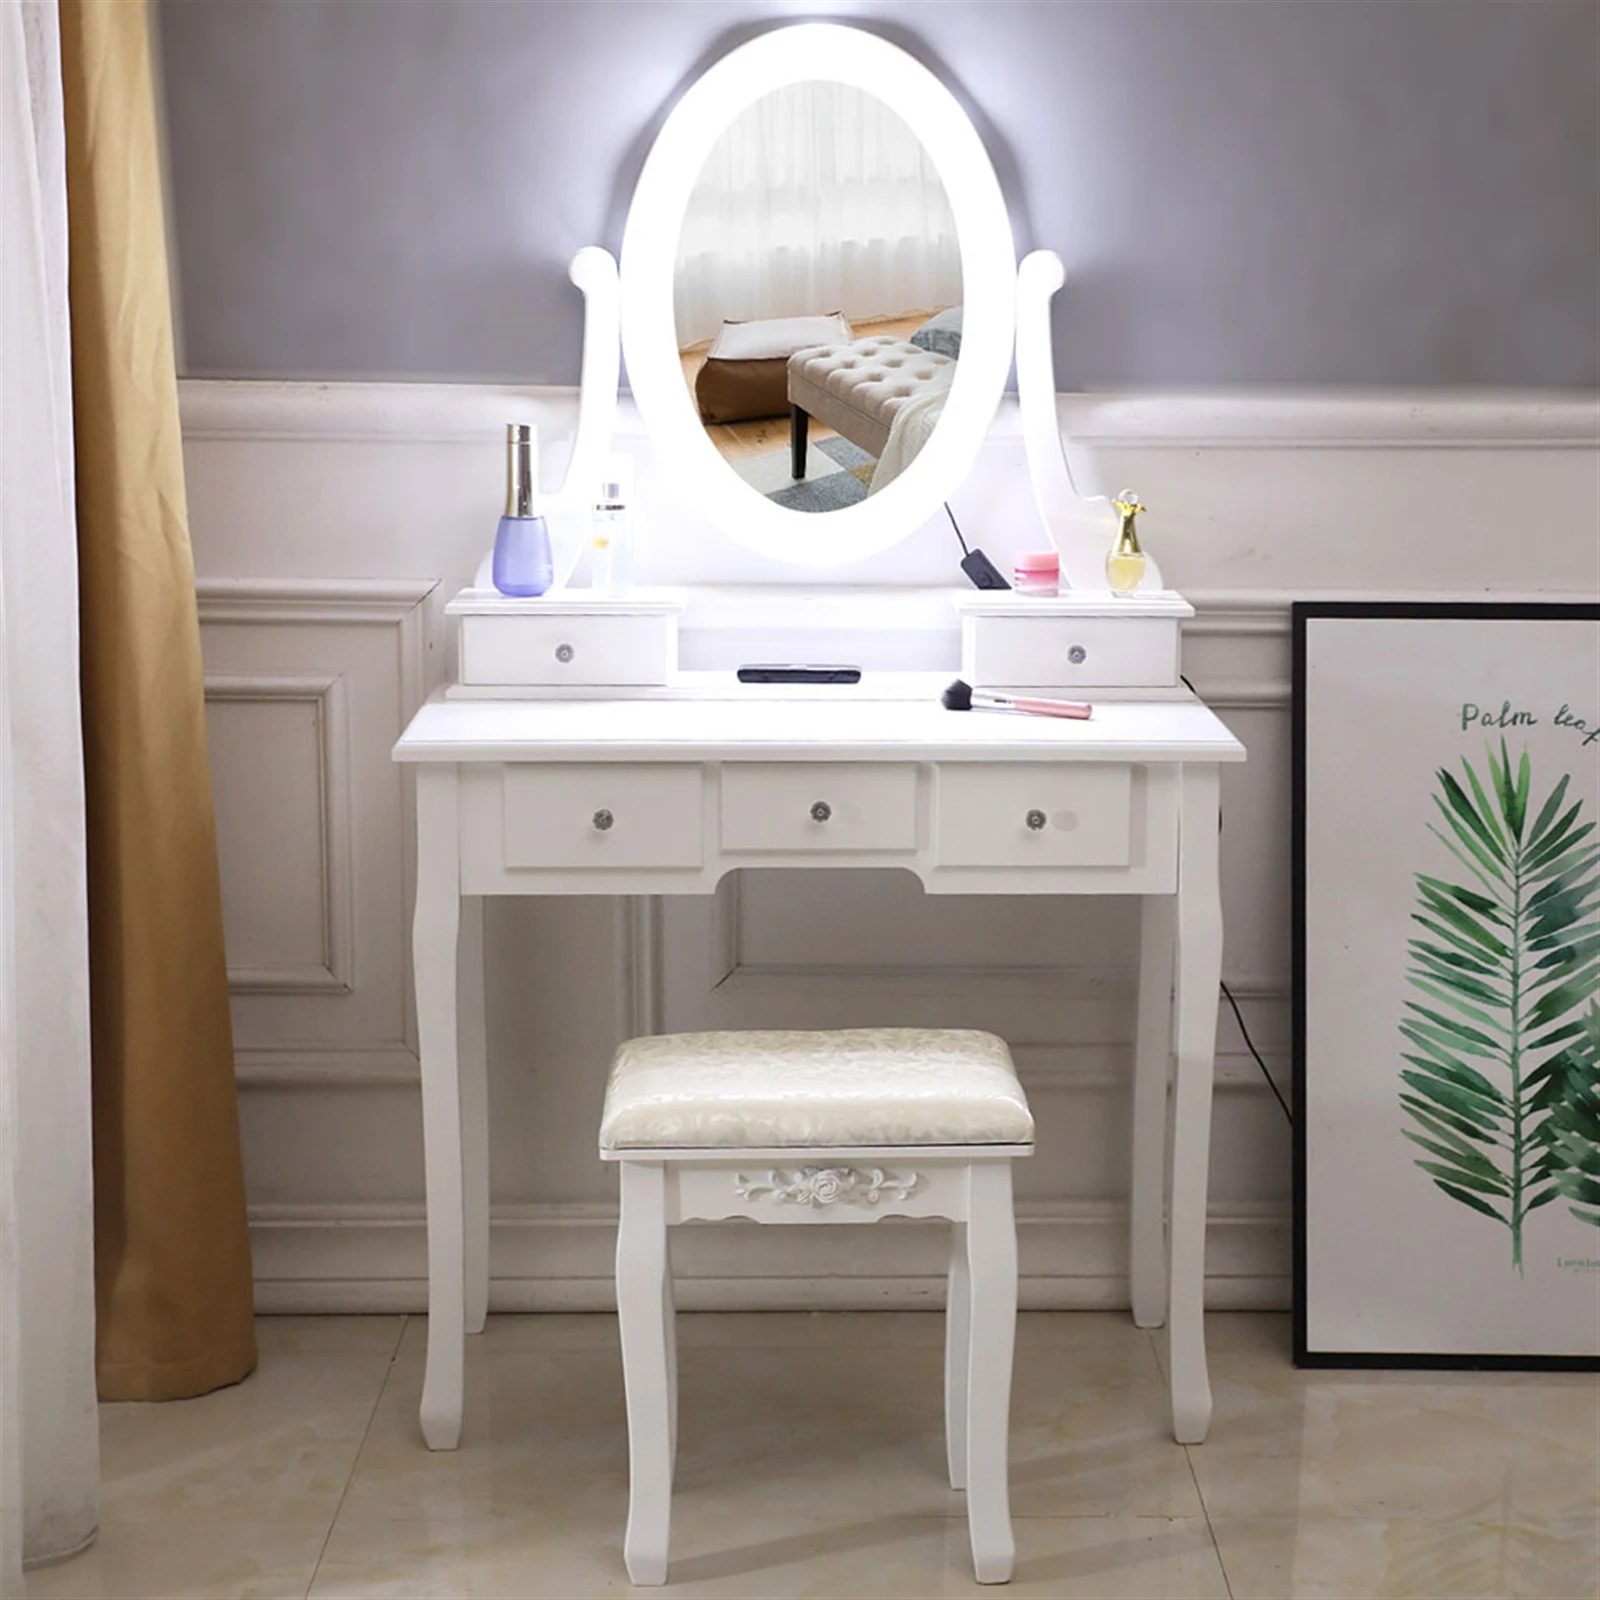 

Европейский набор для туалетного столика с зеркальными лампочками, полки для макияжа, 5 ящиков, женский туалетный столик, семейный белый стол